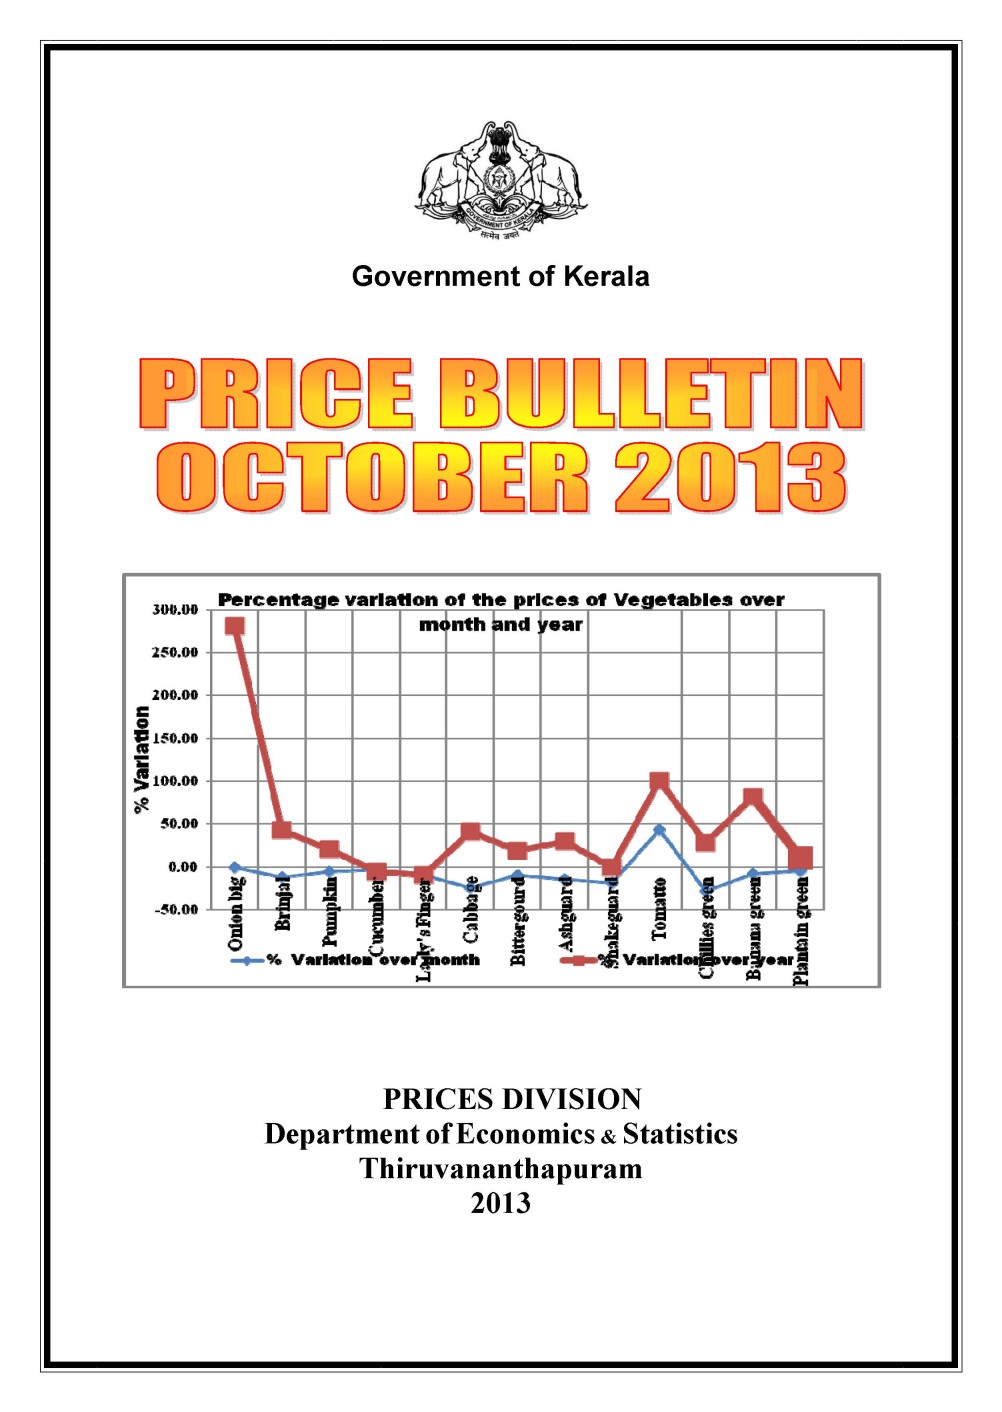 Price Bulletin October 2013